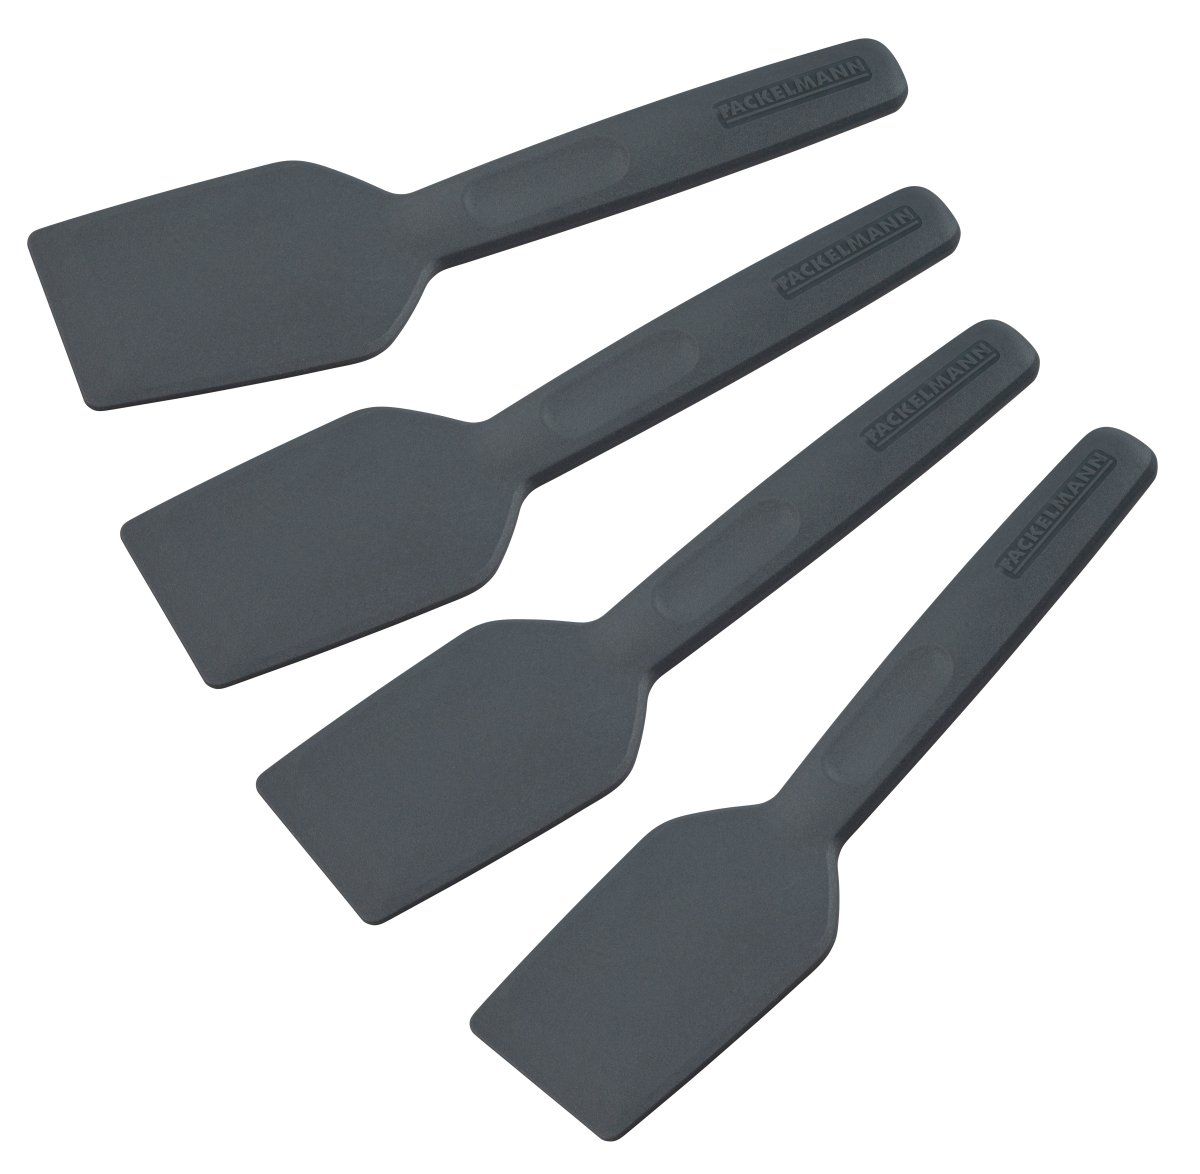 Mini spatules en inox 10 cm - 3 modèles - Planète Gateau